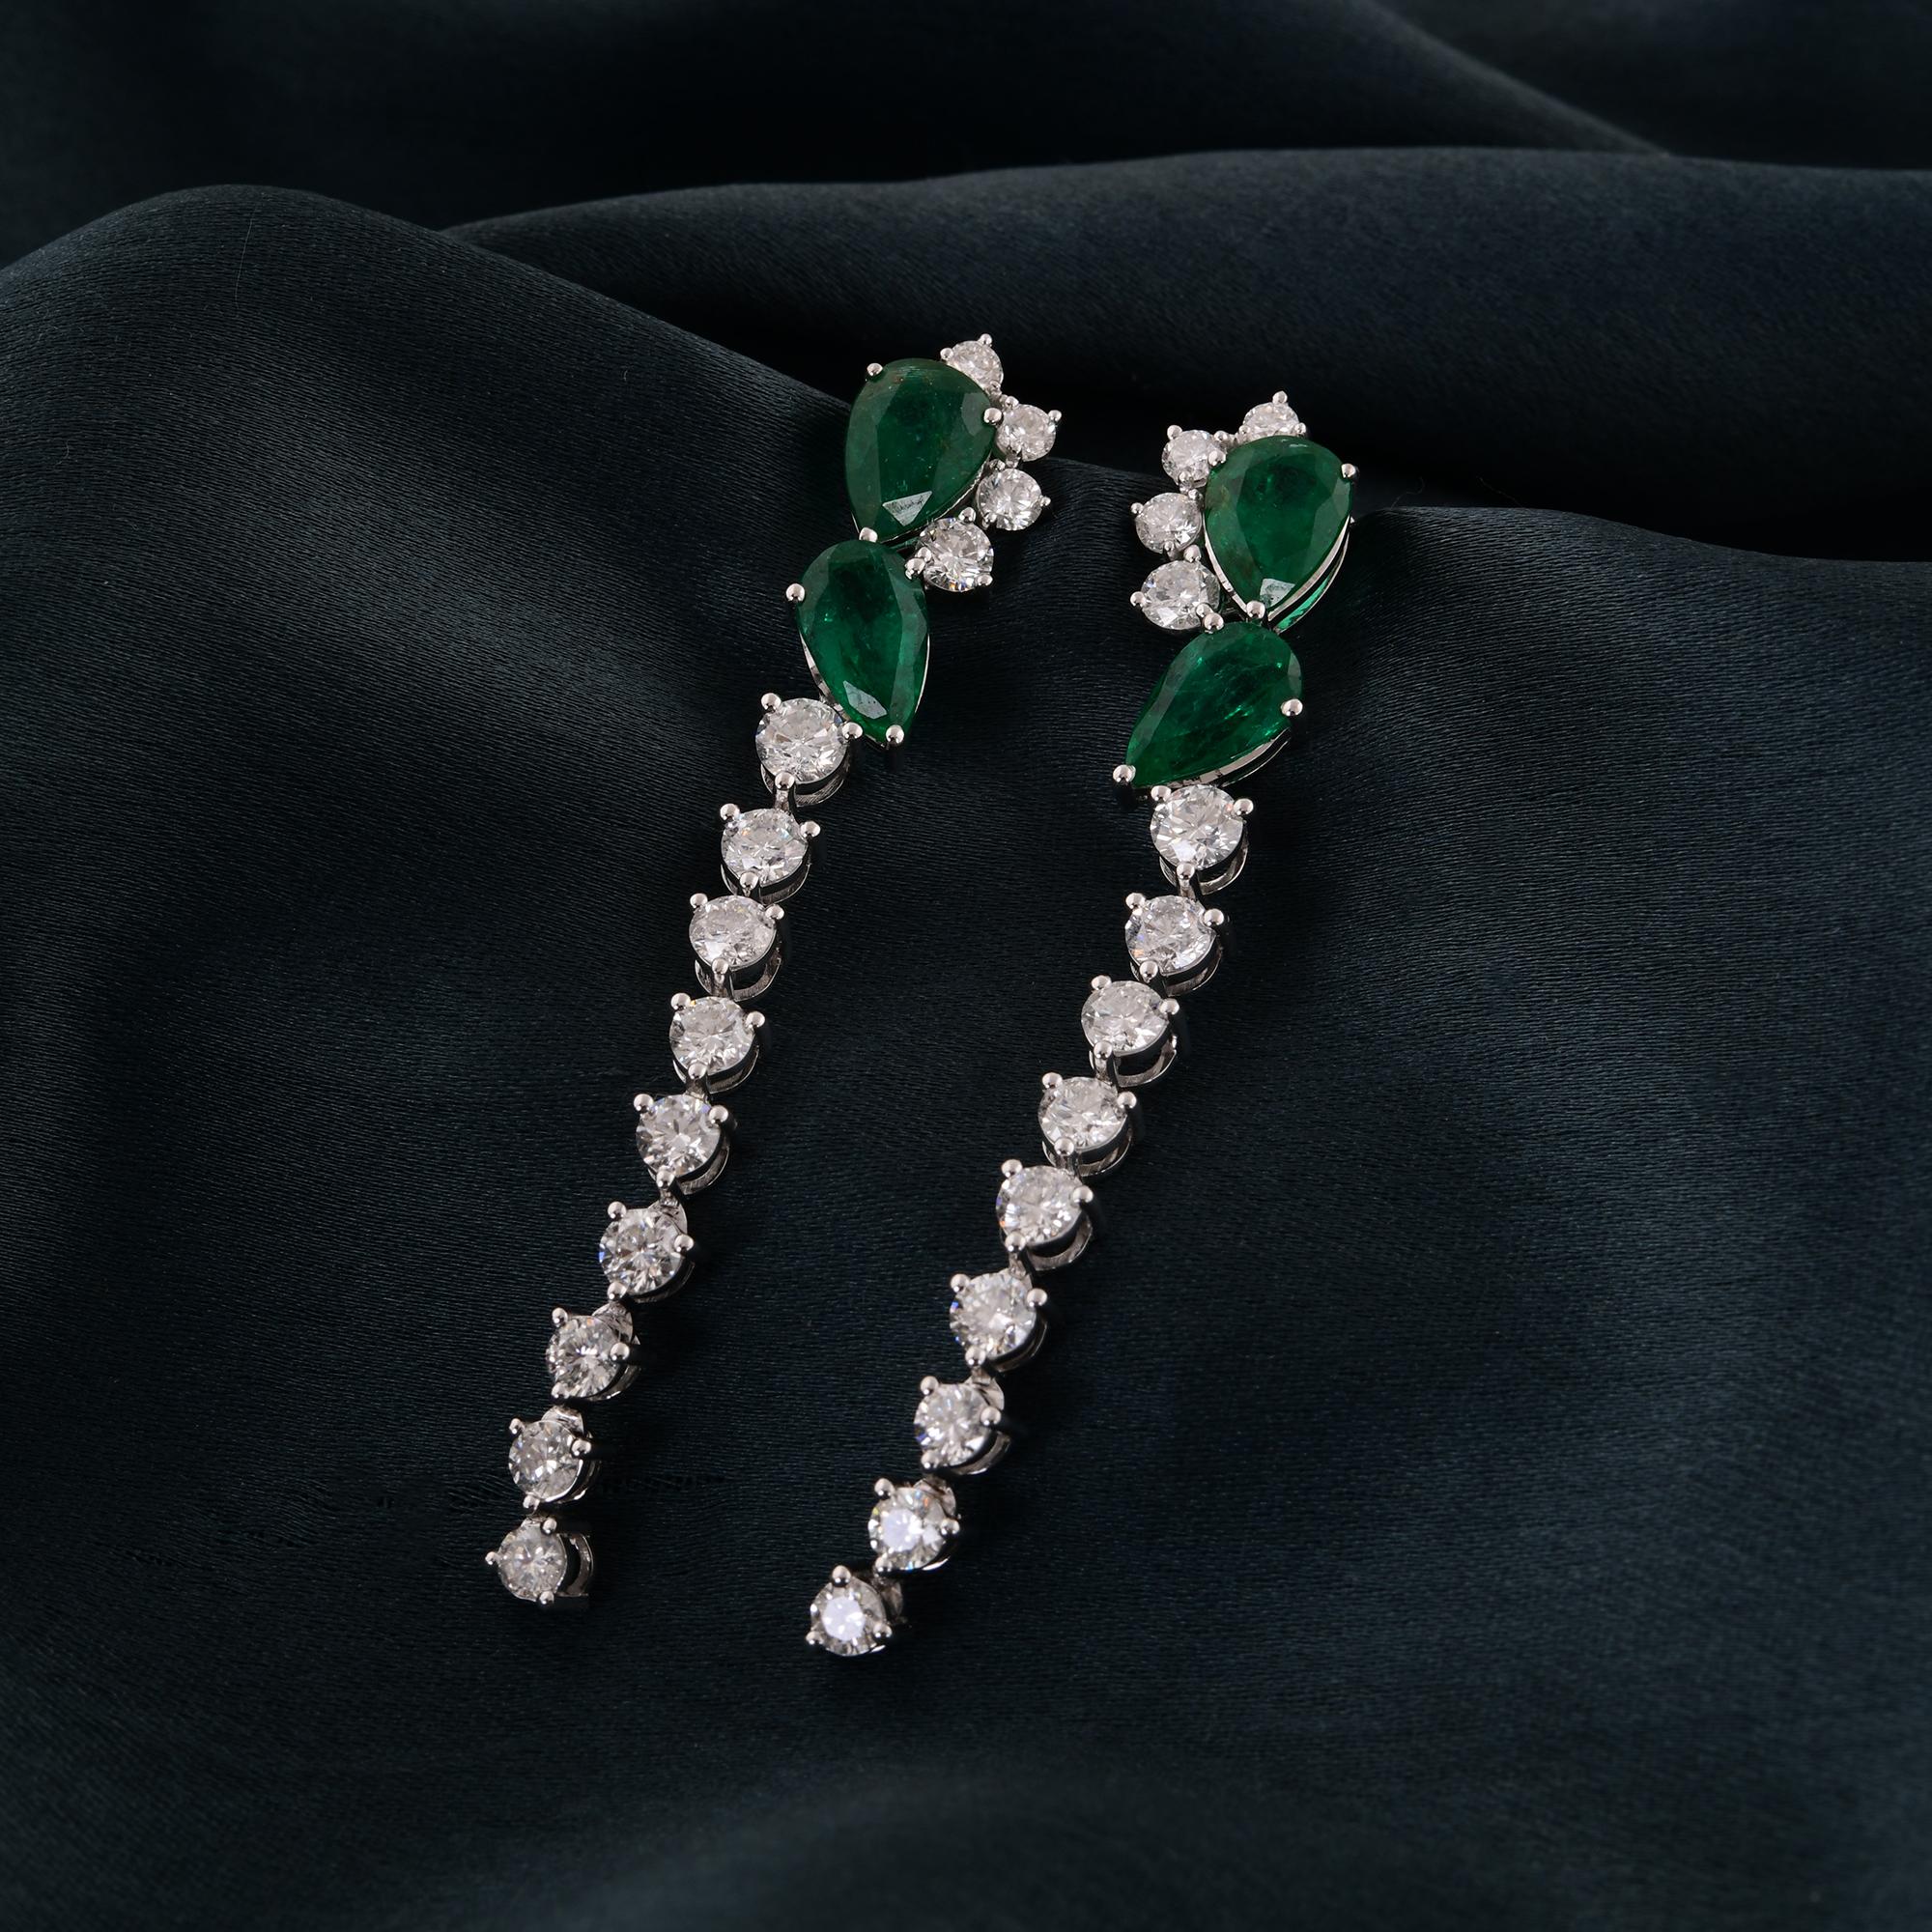 Modern Real Zambian Emerald Gemstone Drop Earrings Diamond 18 Karat White Gold Jewelry For Sale